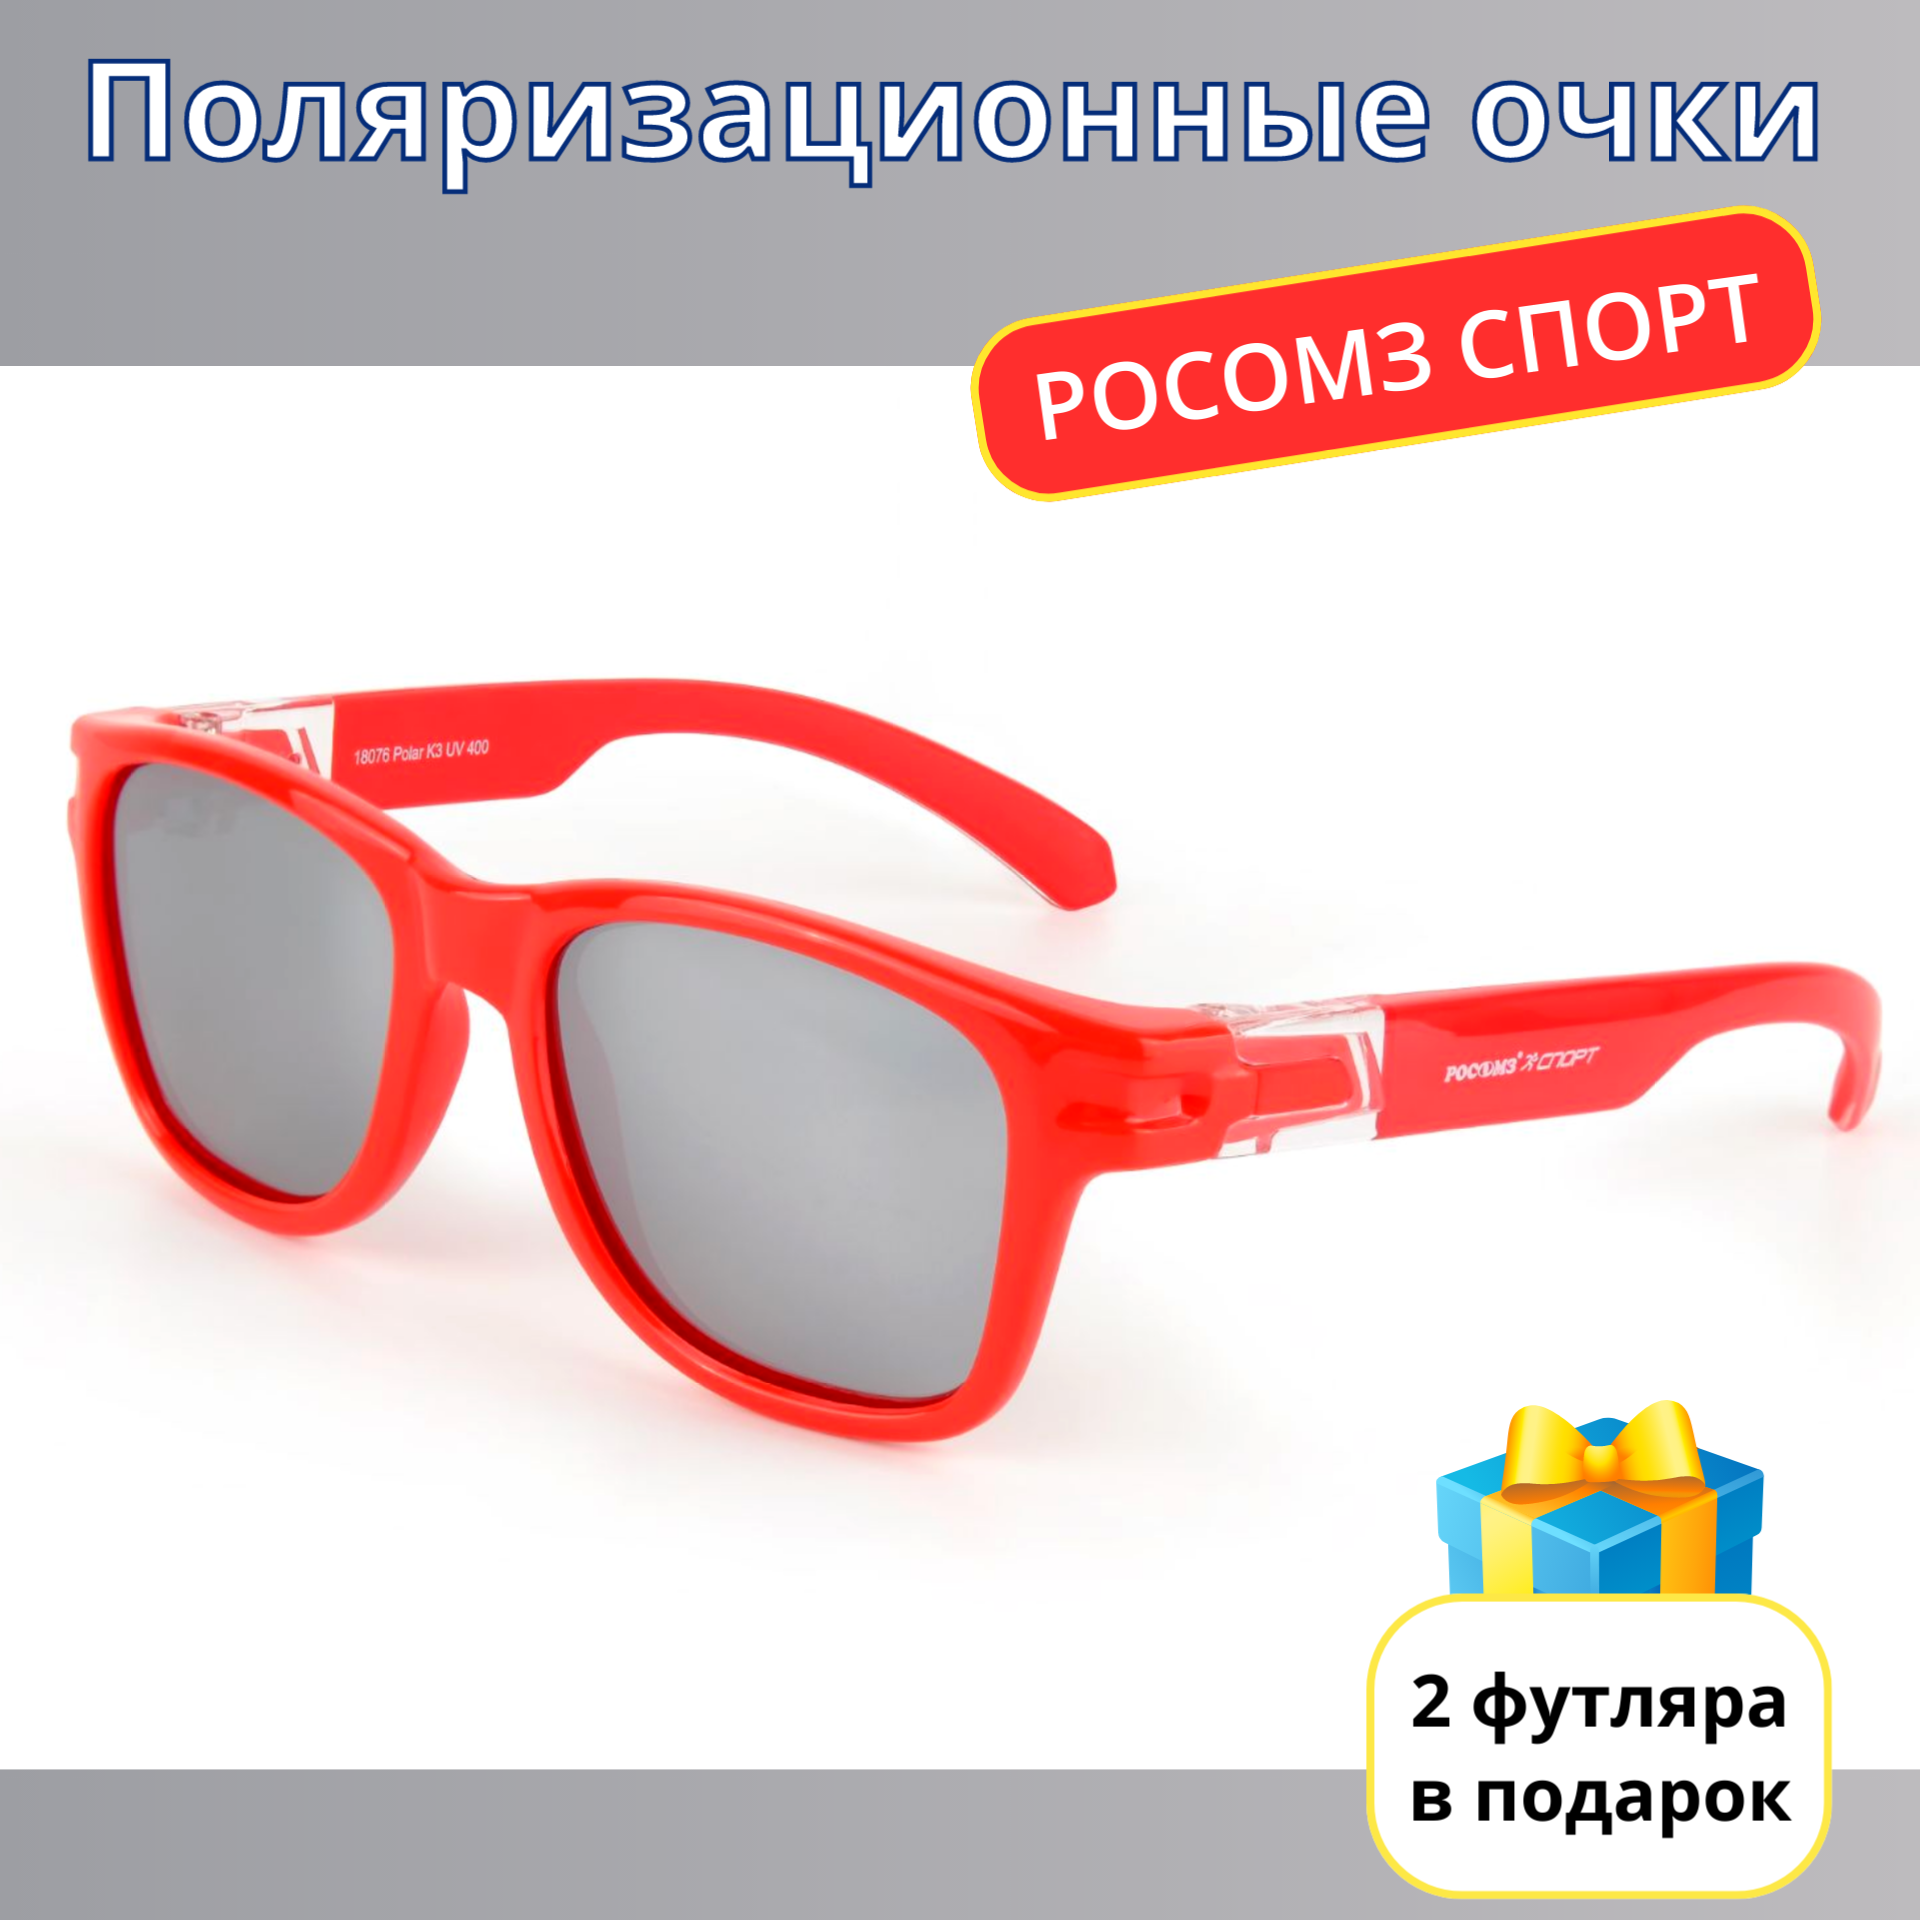 Солнцезащитные очки РОСОМЗ